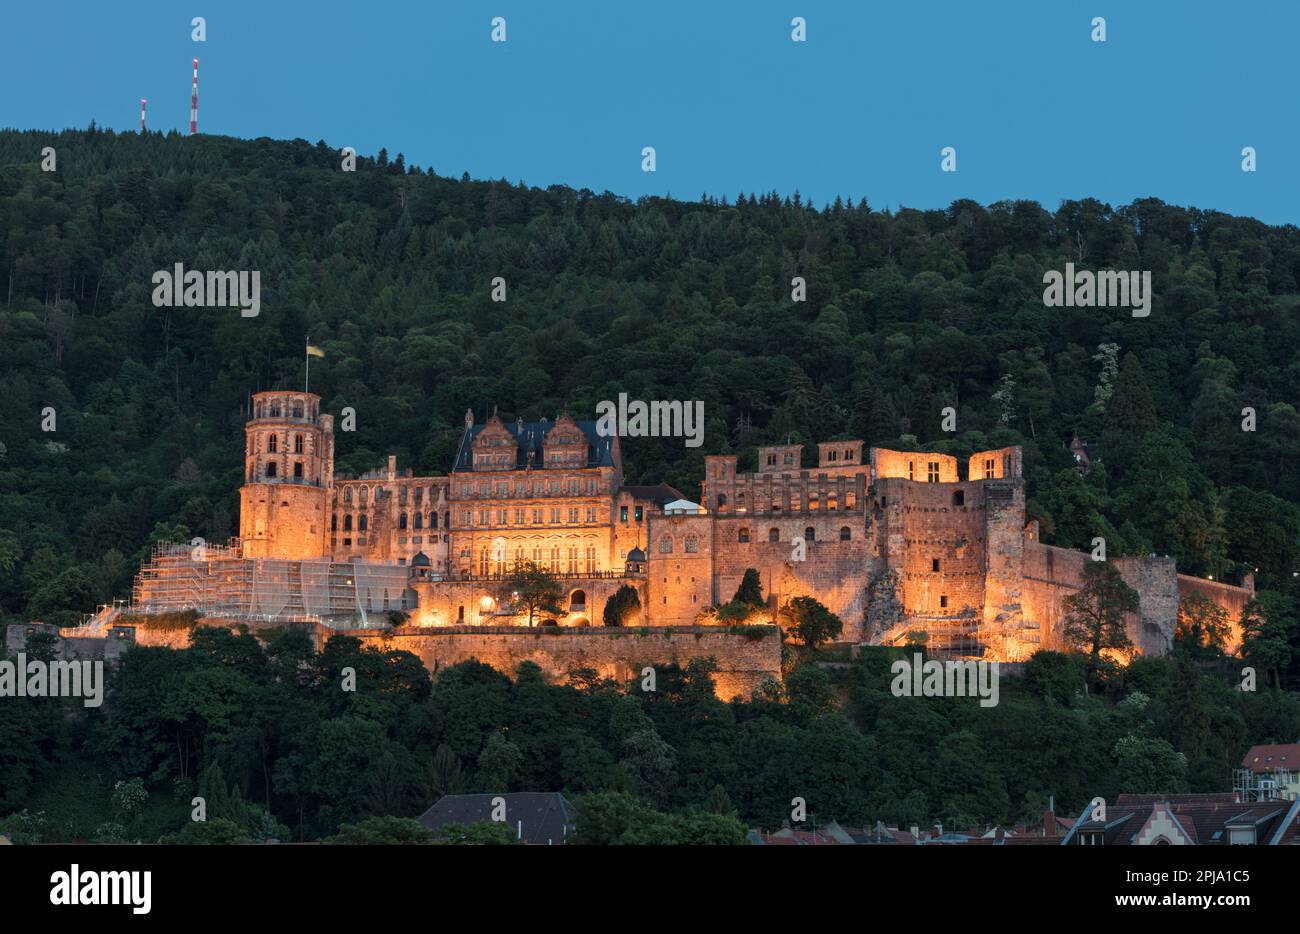 Pernottamento al Castello di Heidelberg sulla collina di Konigstuhl. Edificio gotico rinascimentale nella valle di Neckar che si affaccia sul centro storico e sul fiume Neckar. Heidelberg. Foto Stock